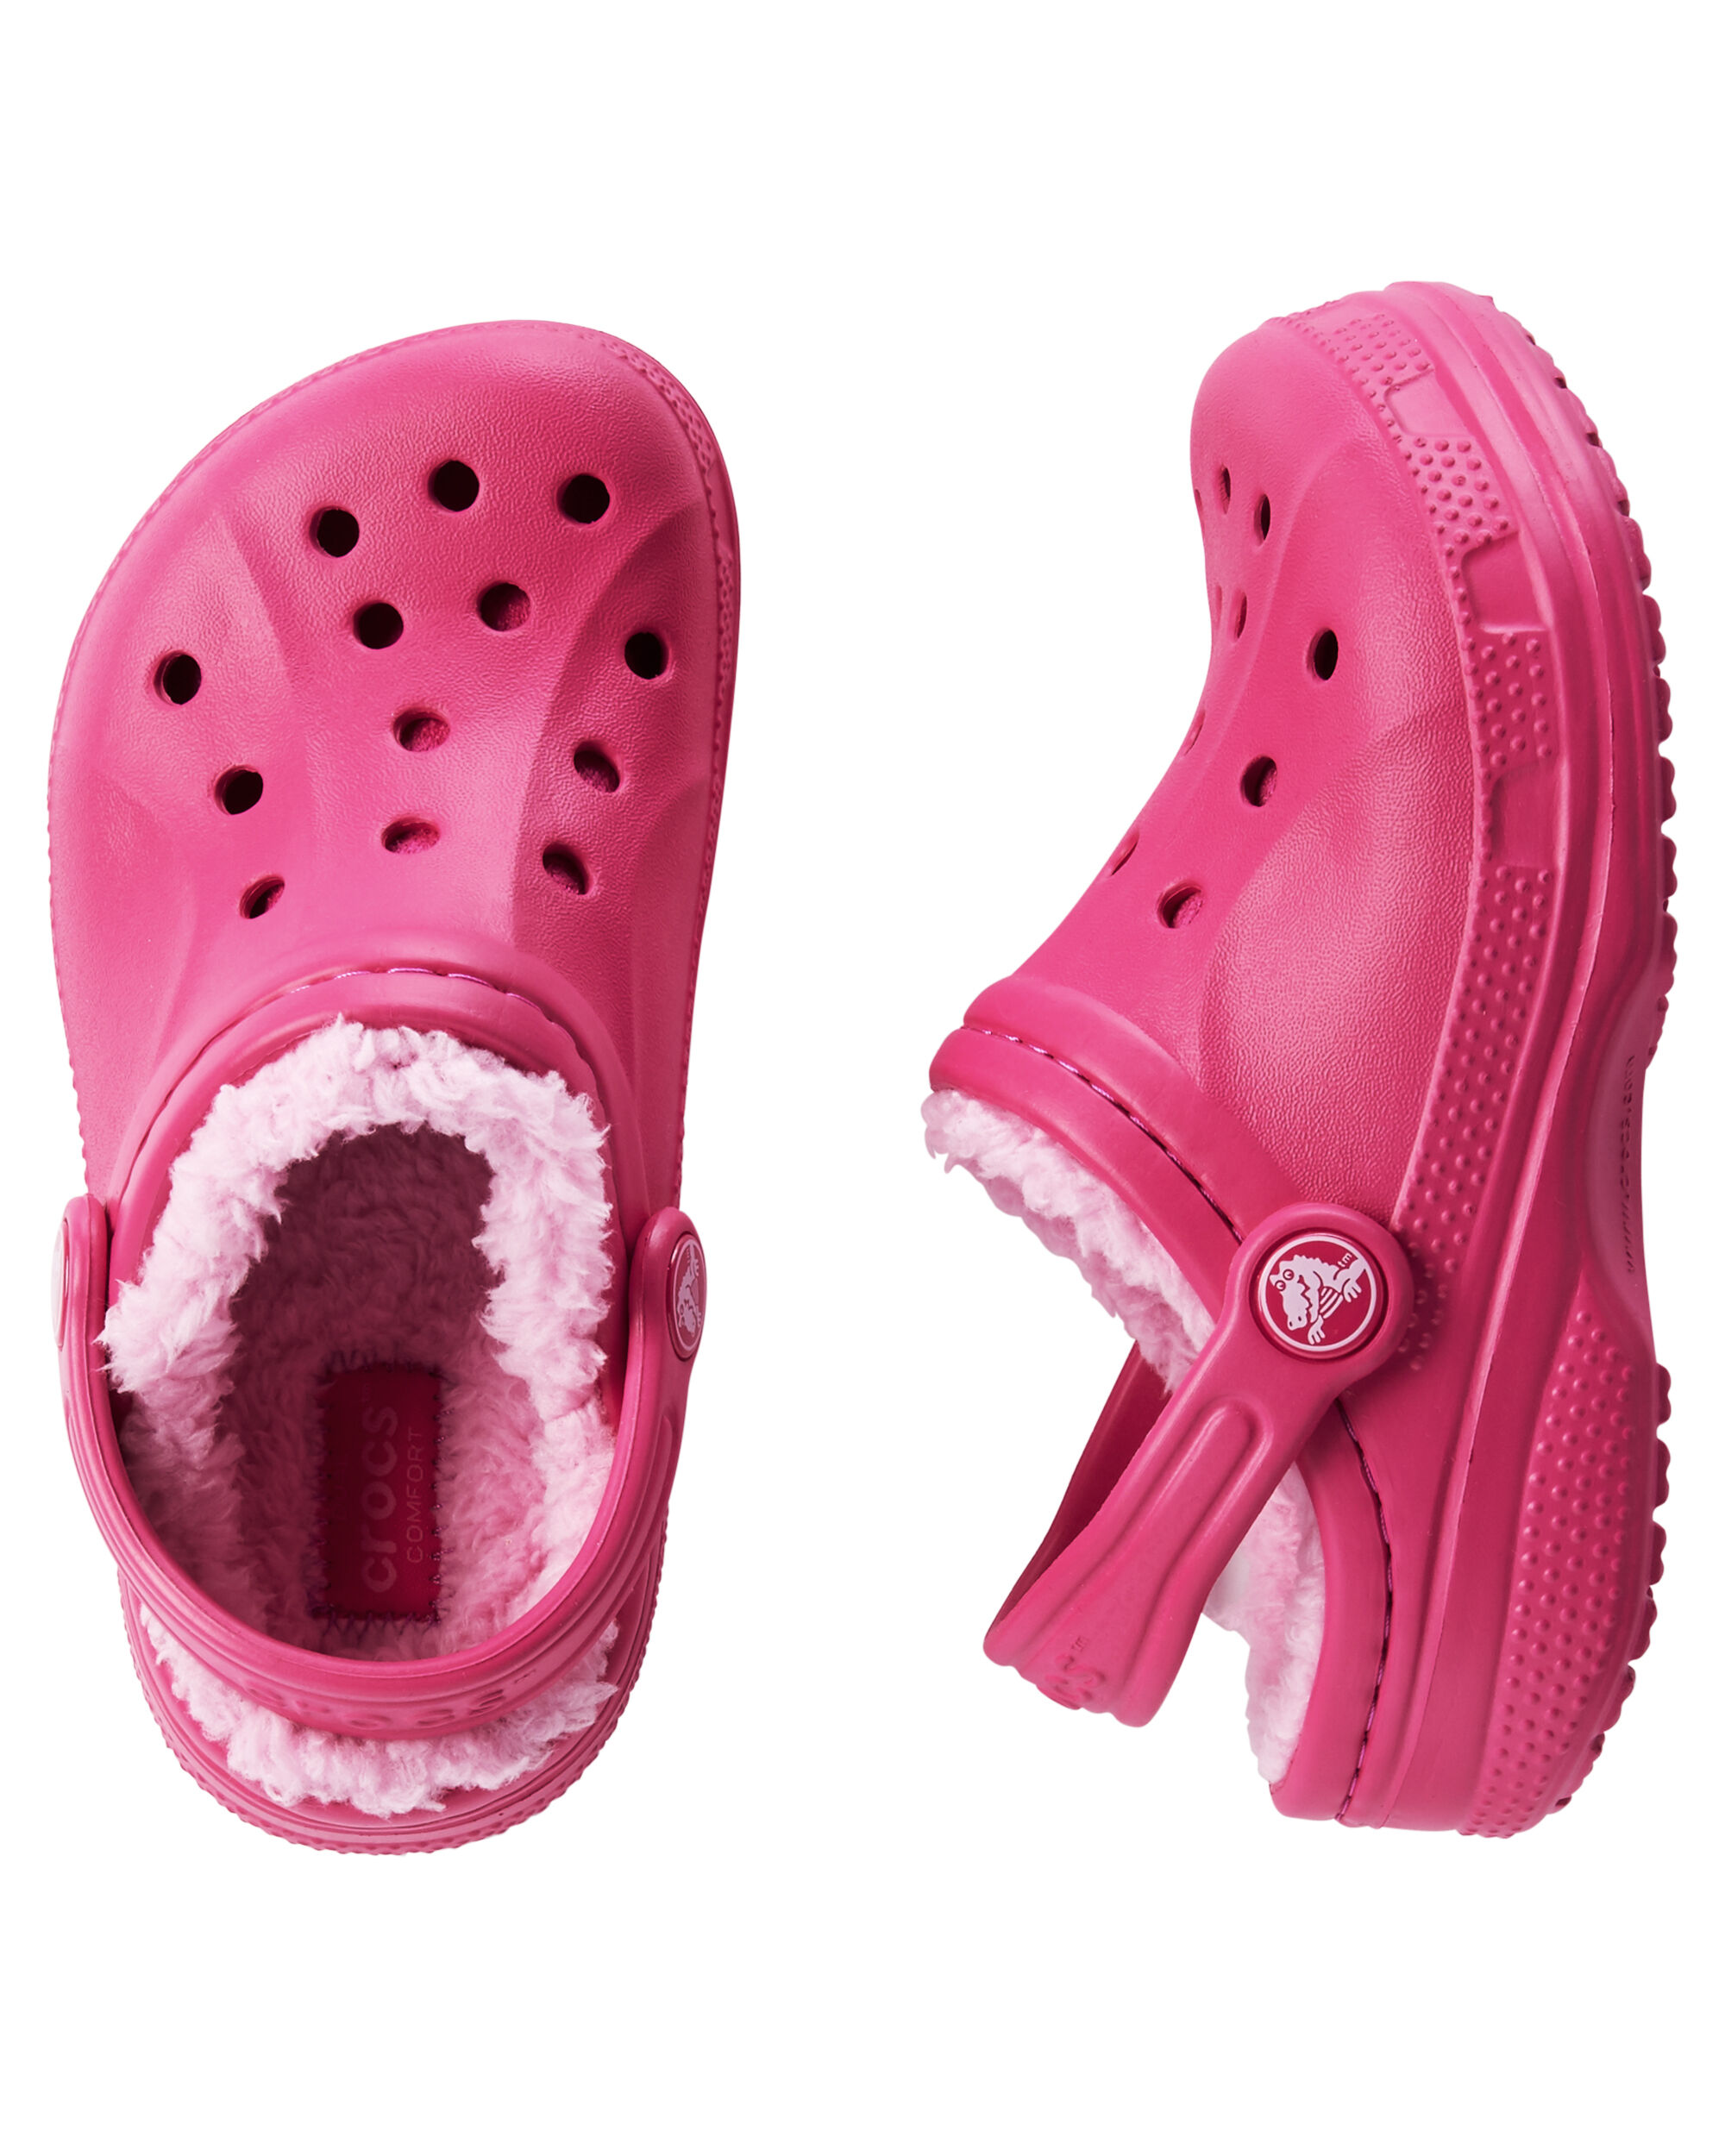 kids winter crocs